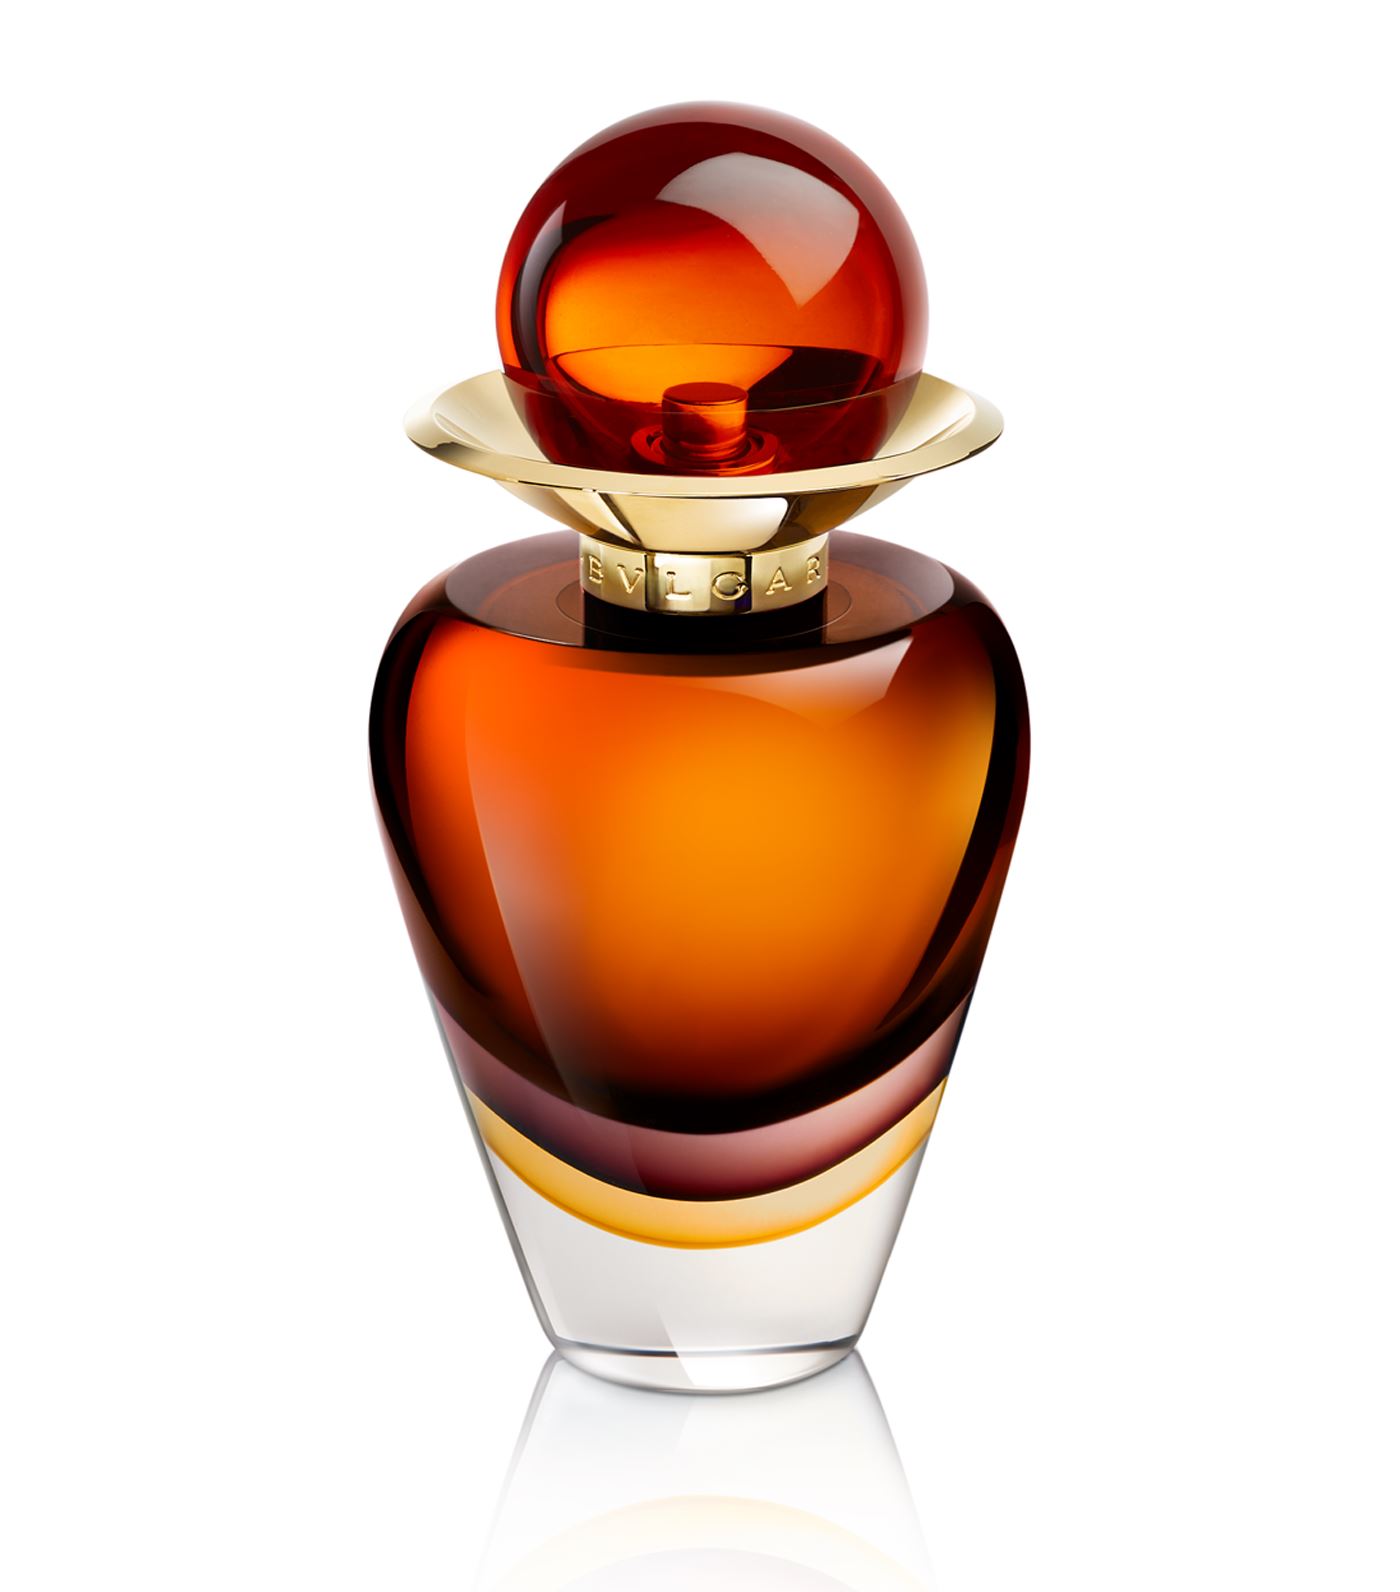 Murano Zahira Bvlgari perfume - a new 